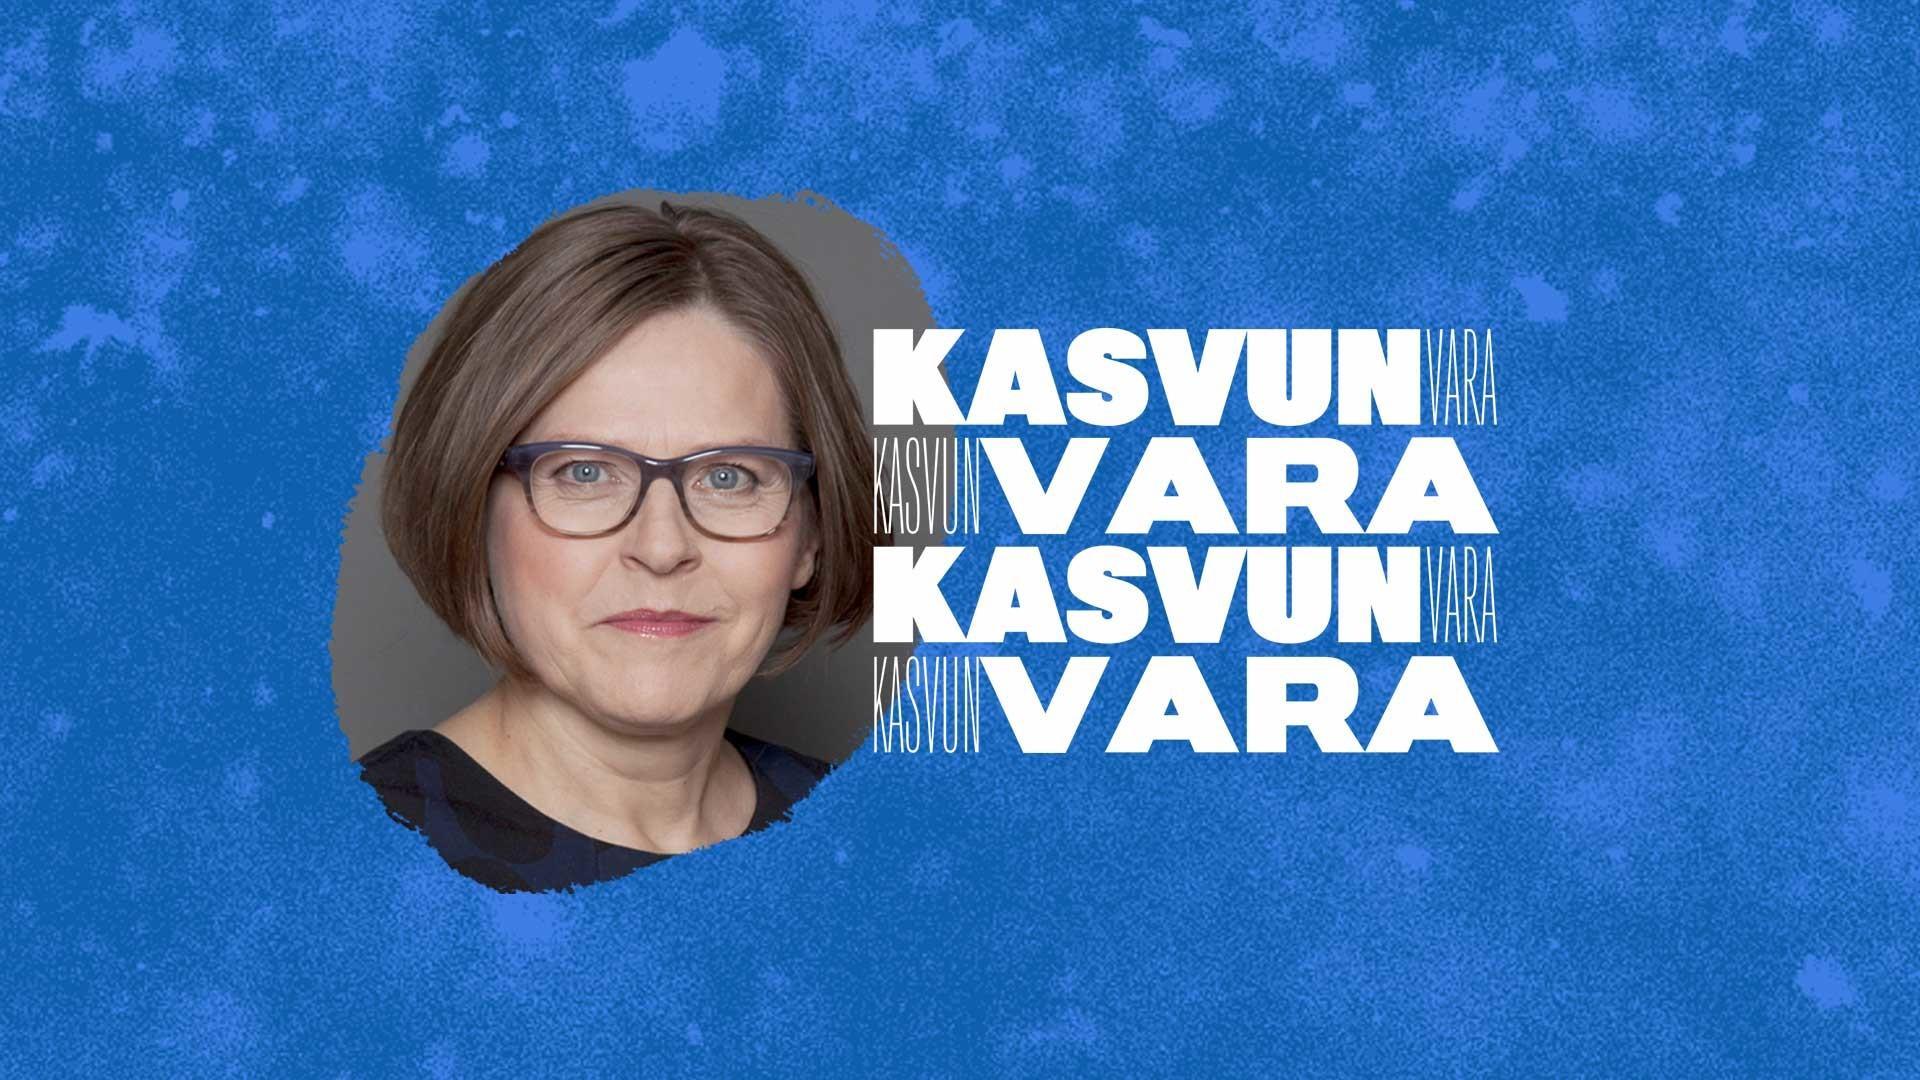 Heidi Hautala uskoo, että yritysvastuudirektiivi muuttaa yritysten pelikentän. Hautala puhui aiheesta Kaskas Median Kasvunvara-tilaisuudessa.